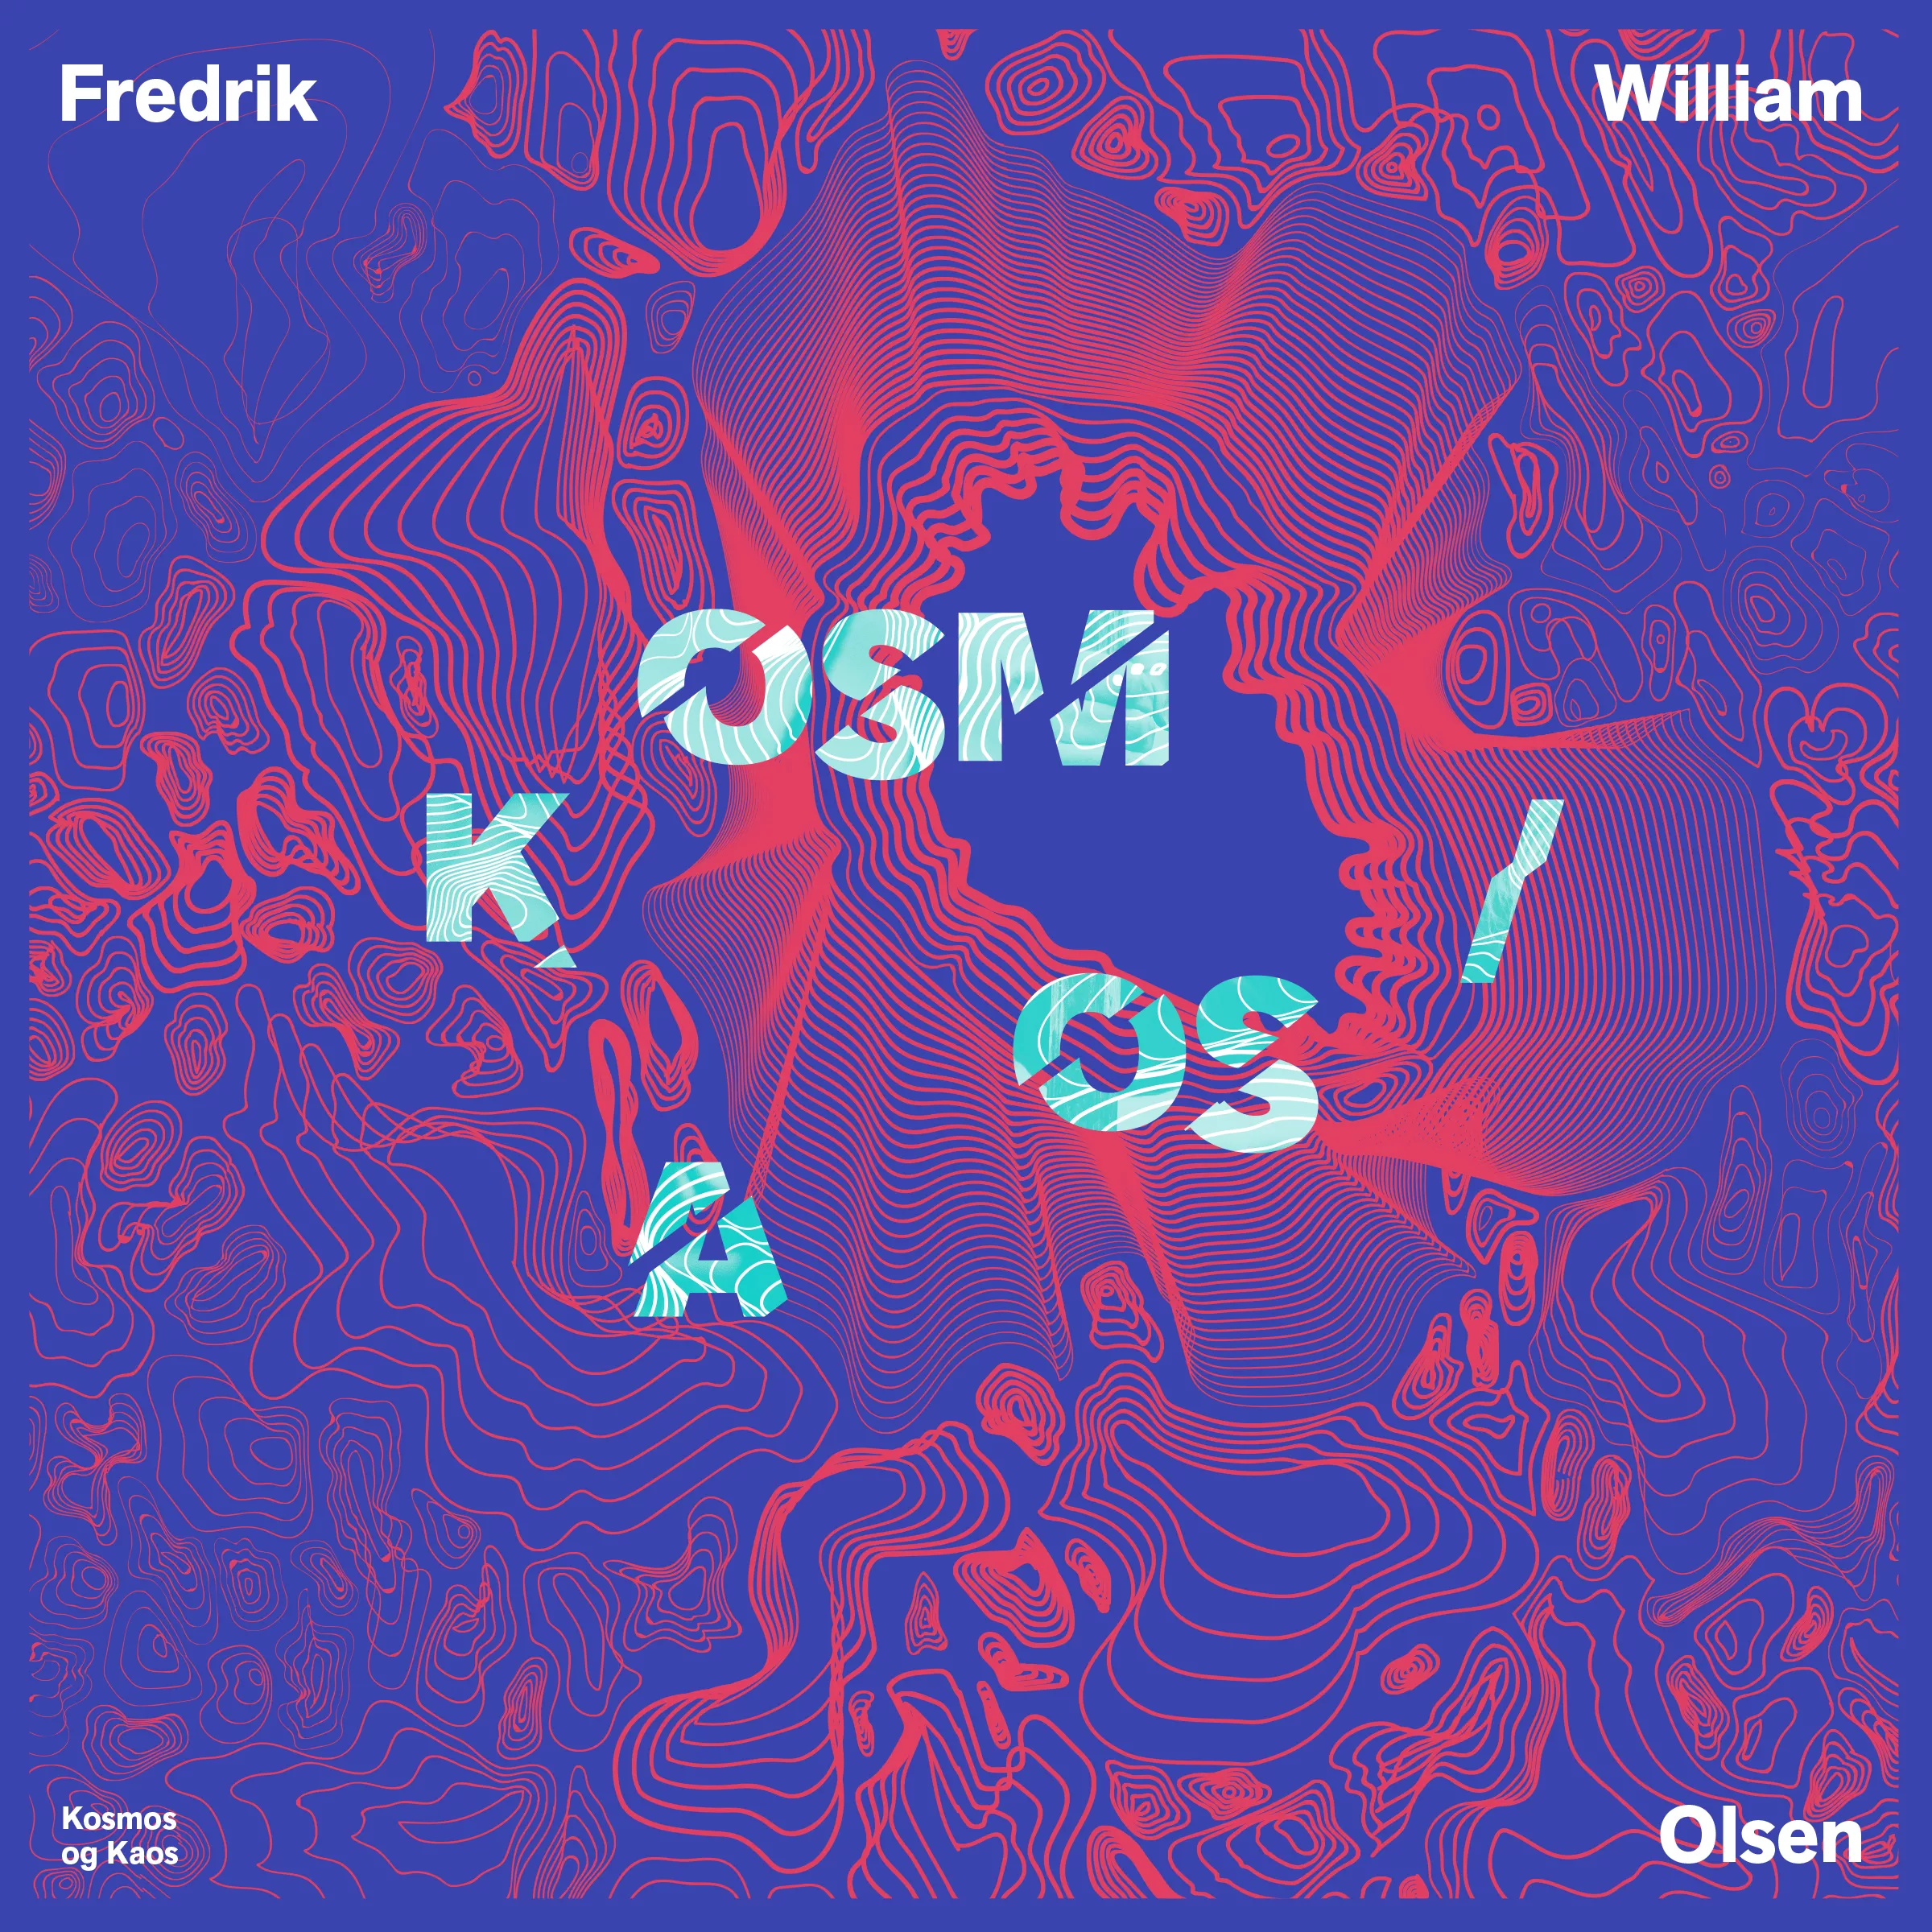 Kosmos Og Kaos - Fredrik William Olsen